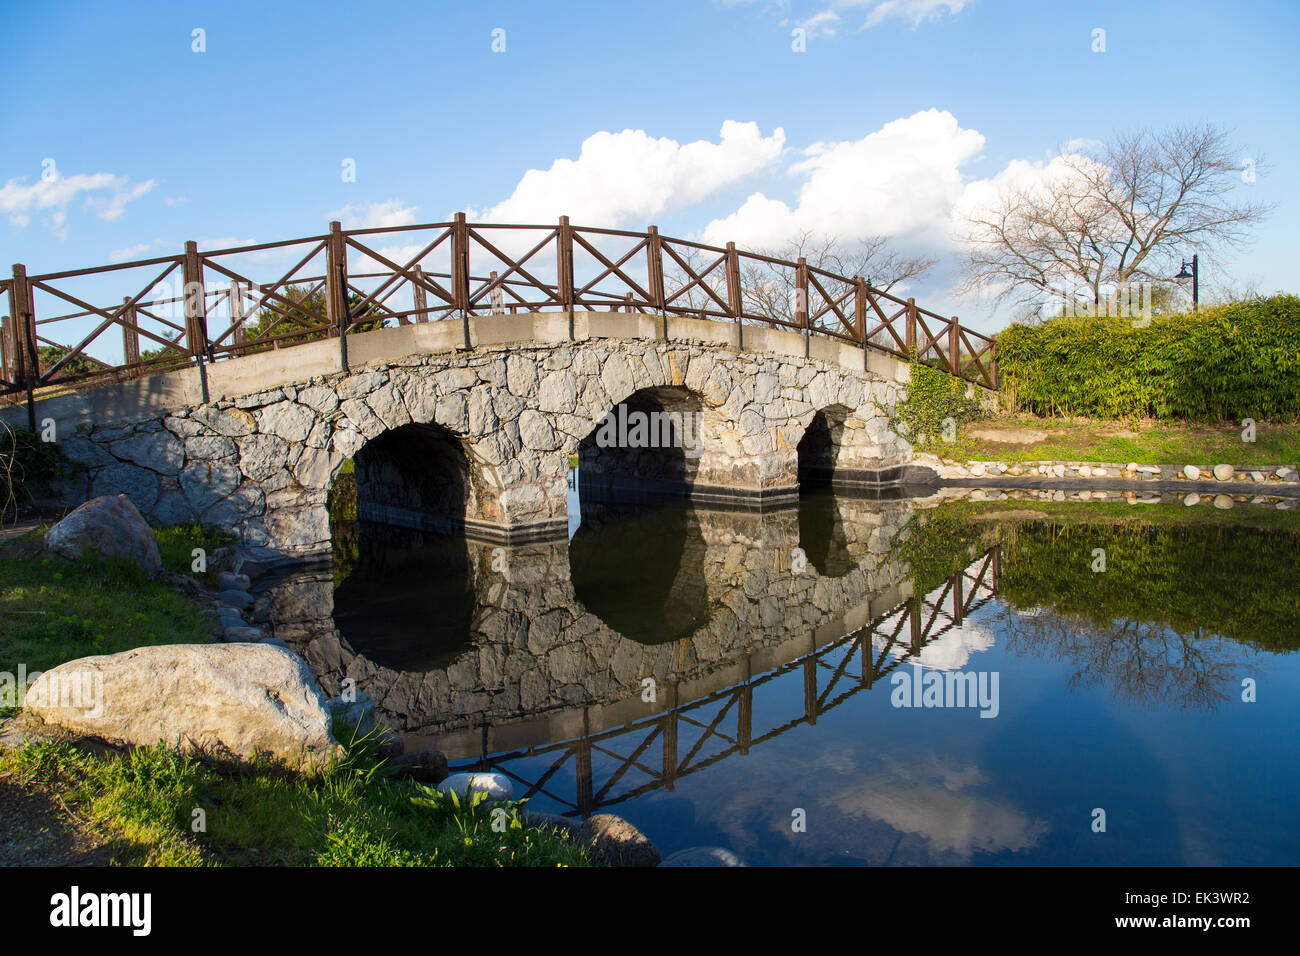 Stein-Bogenbrücke Reflexion Blick auf einem See in einem Park mit blauem Himmelshintergrund zu Beginn des Frühlings Stockfoto